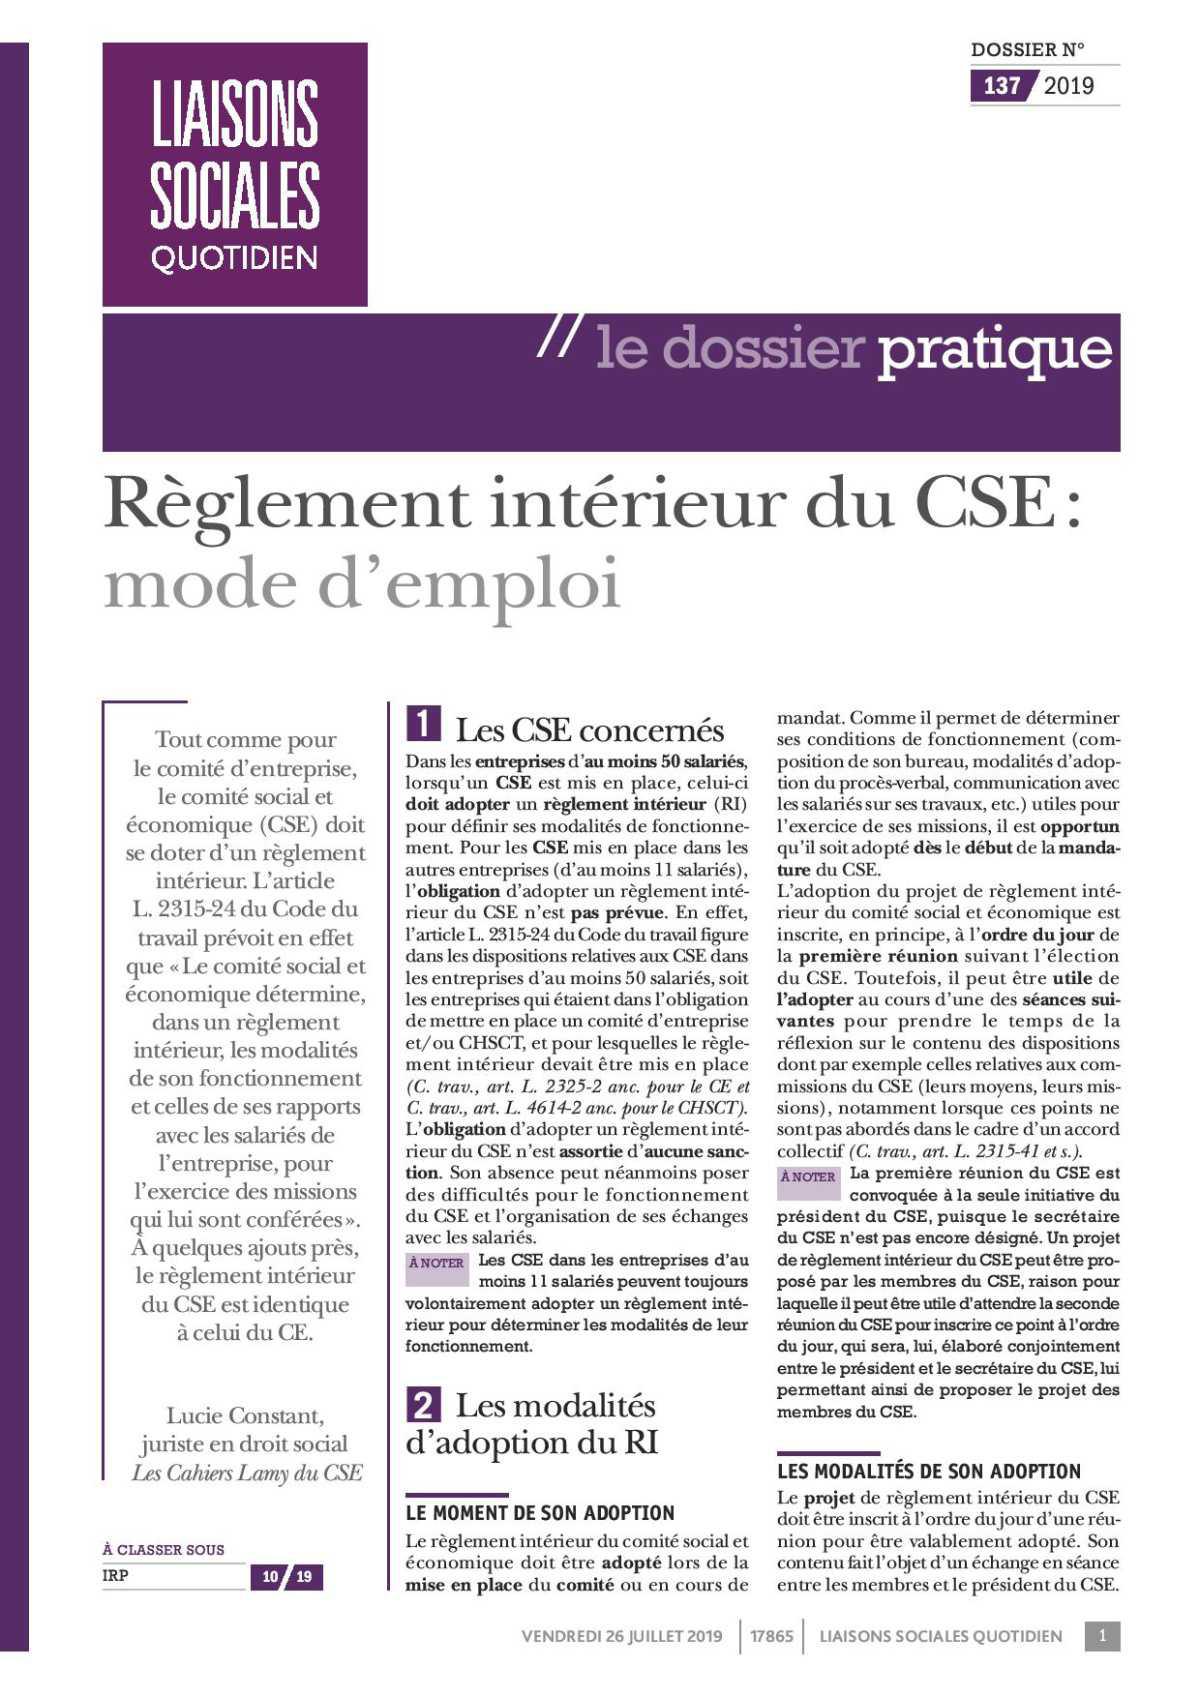 Règlement intérieur du CSE 